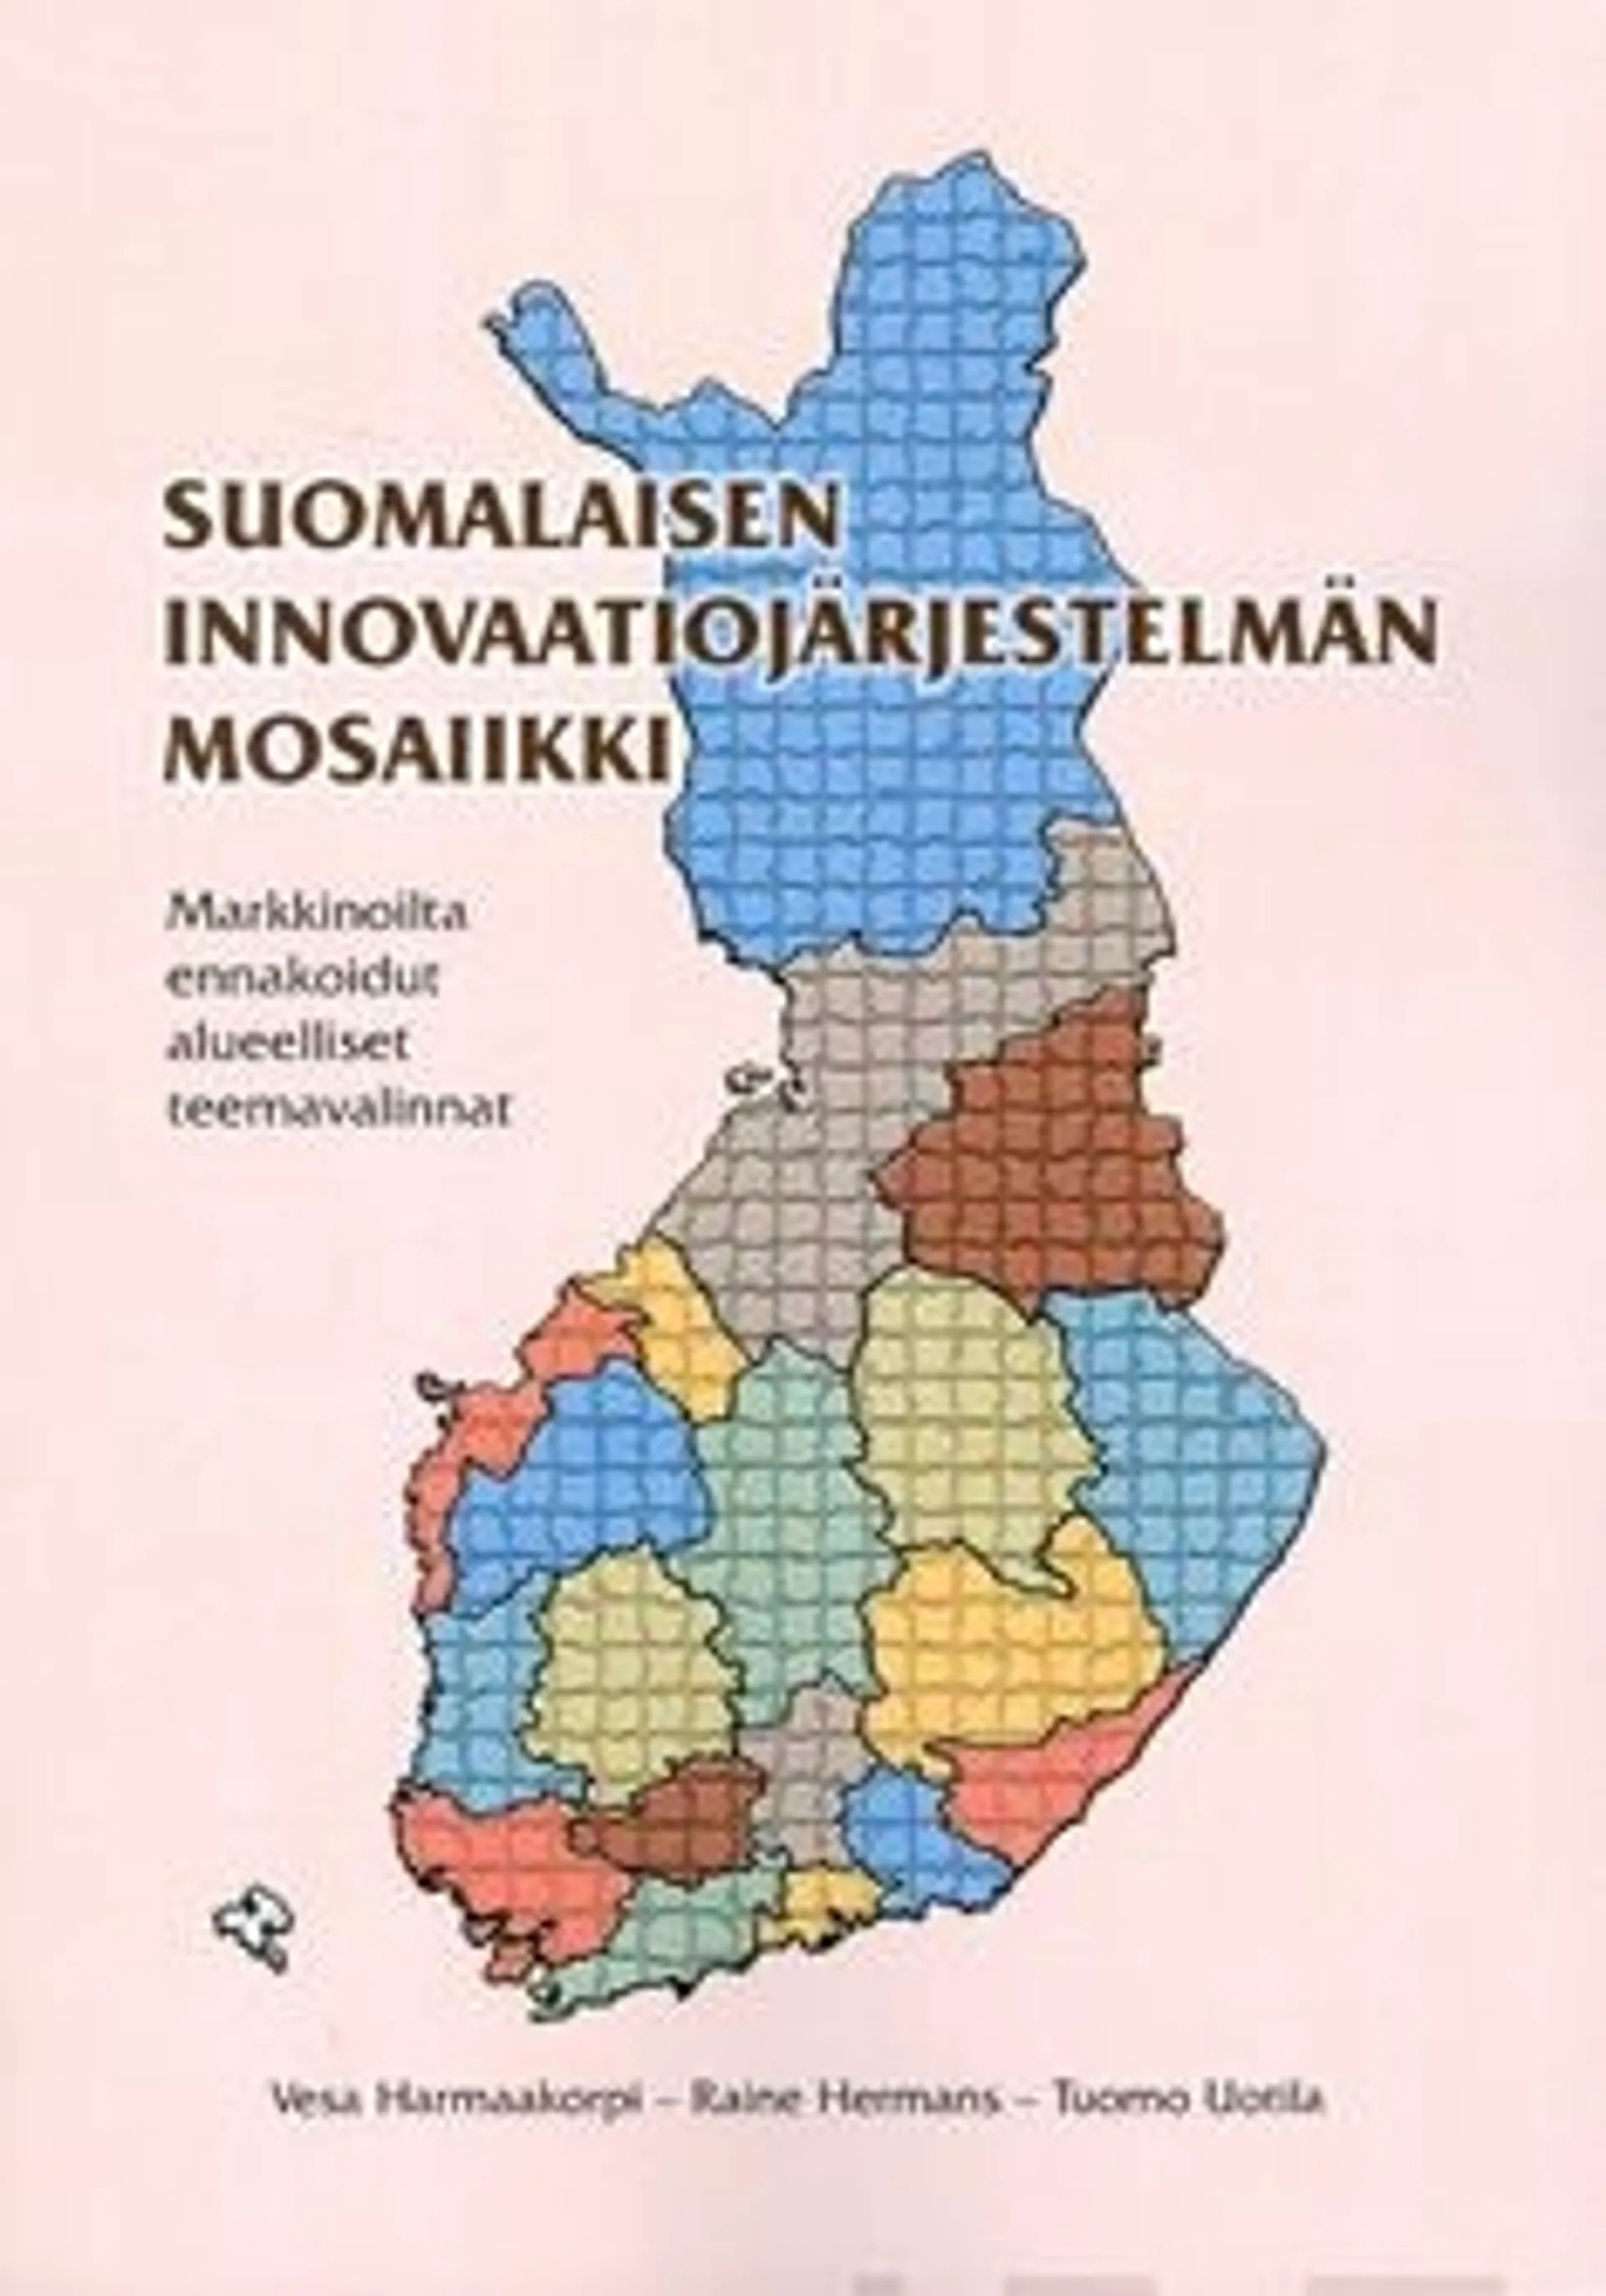 Harmaakorpi, Suomalaisen innovaatiojärjestelmän mosaiikki